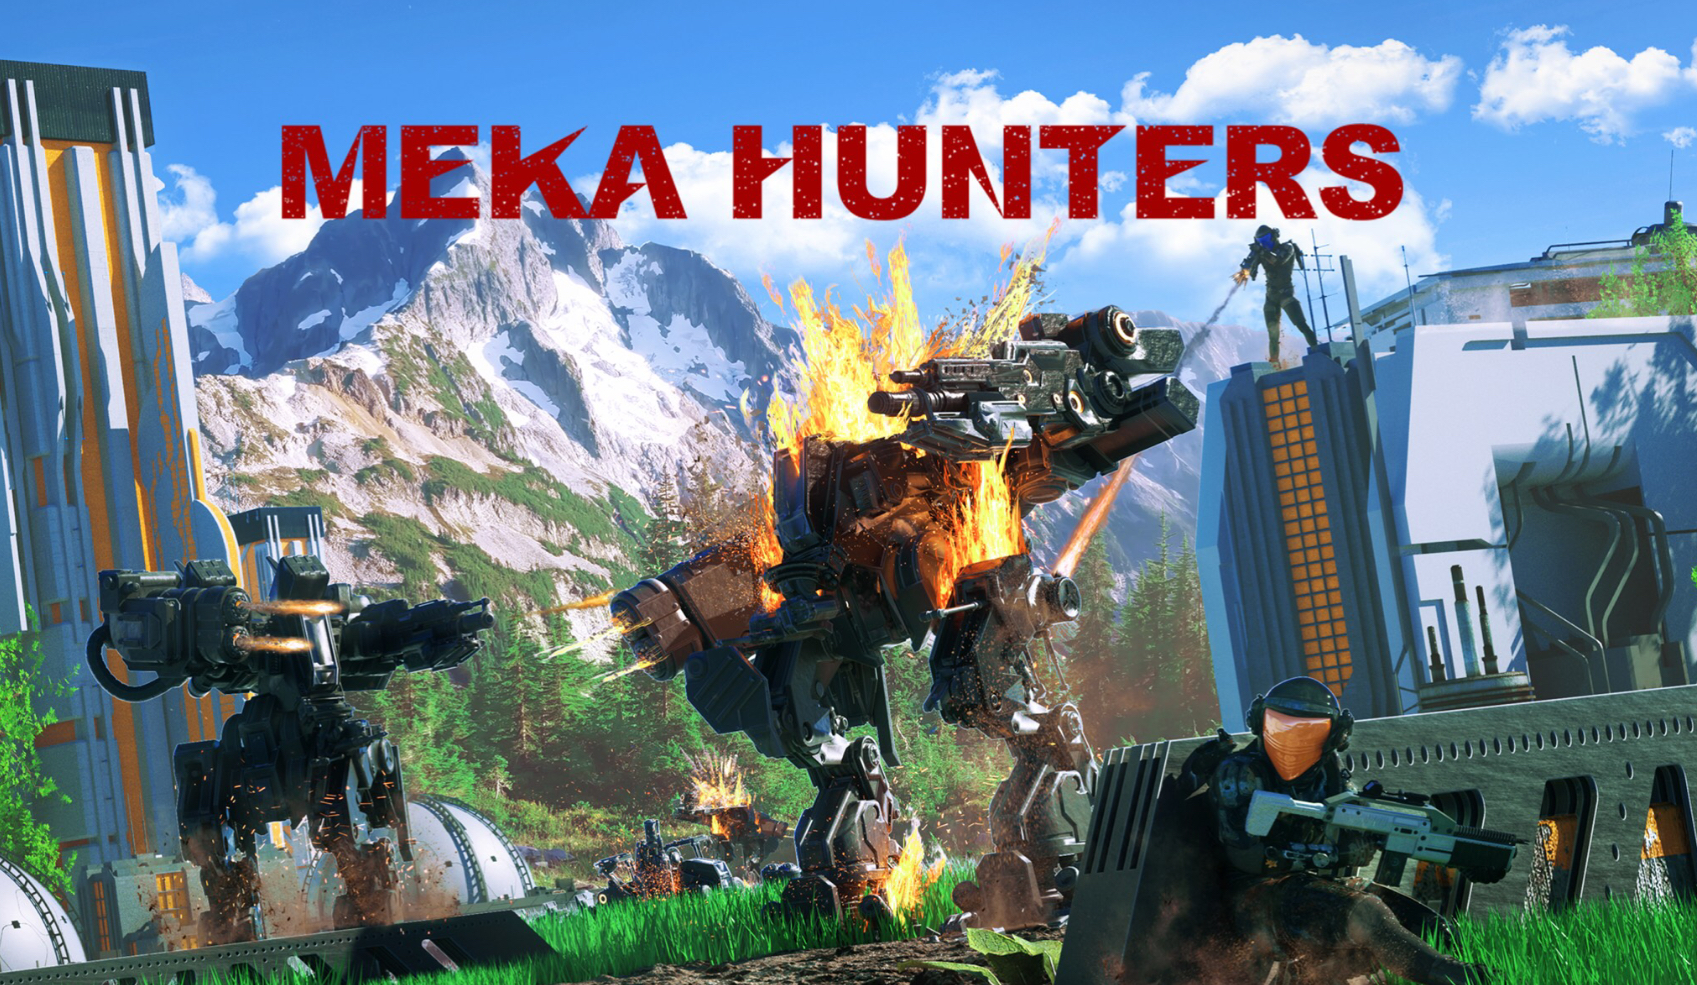 الشخص الثالث Mech Battle Royale 'Meka Hunters' قد حصل على طلب مسبق في متجر التطبيقات قبل تاريخ إصداره بتاريخ 13 نوفمبر